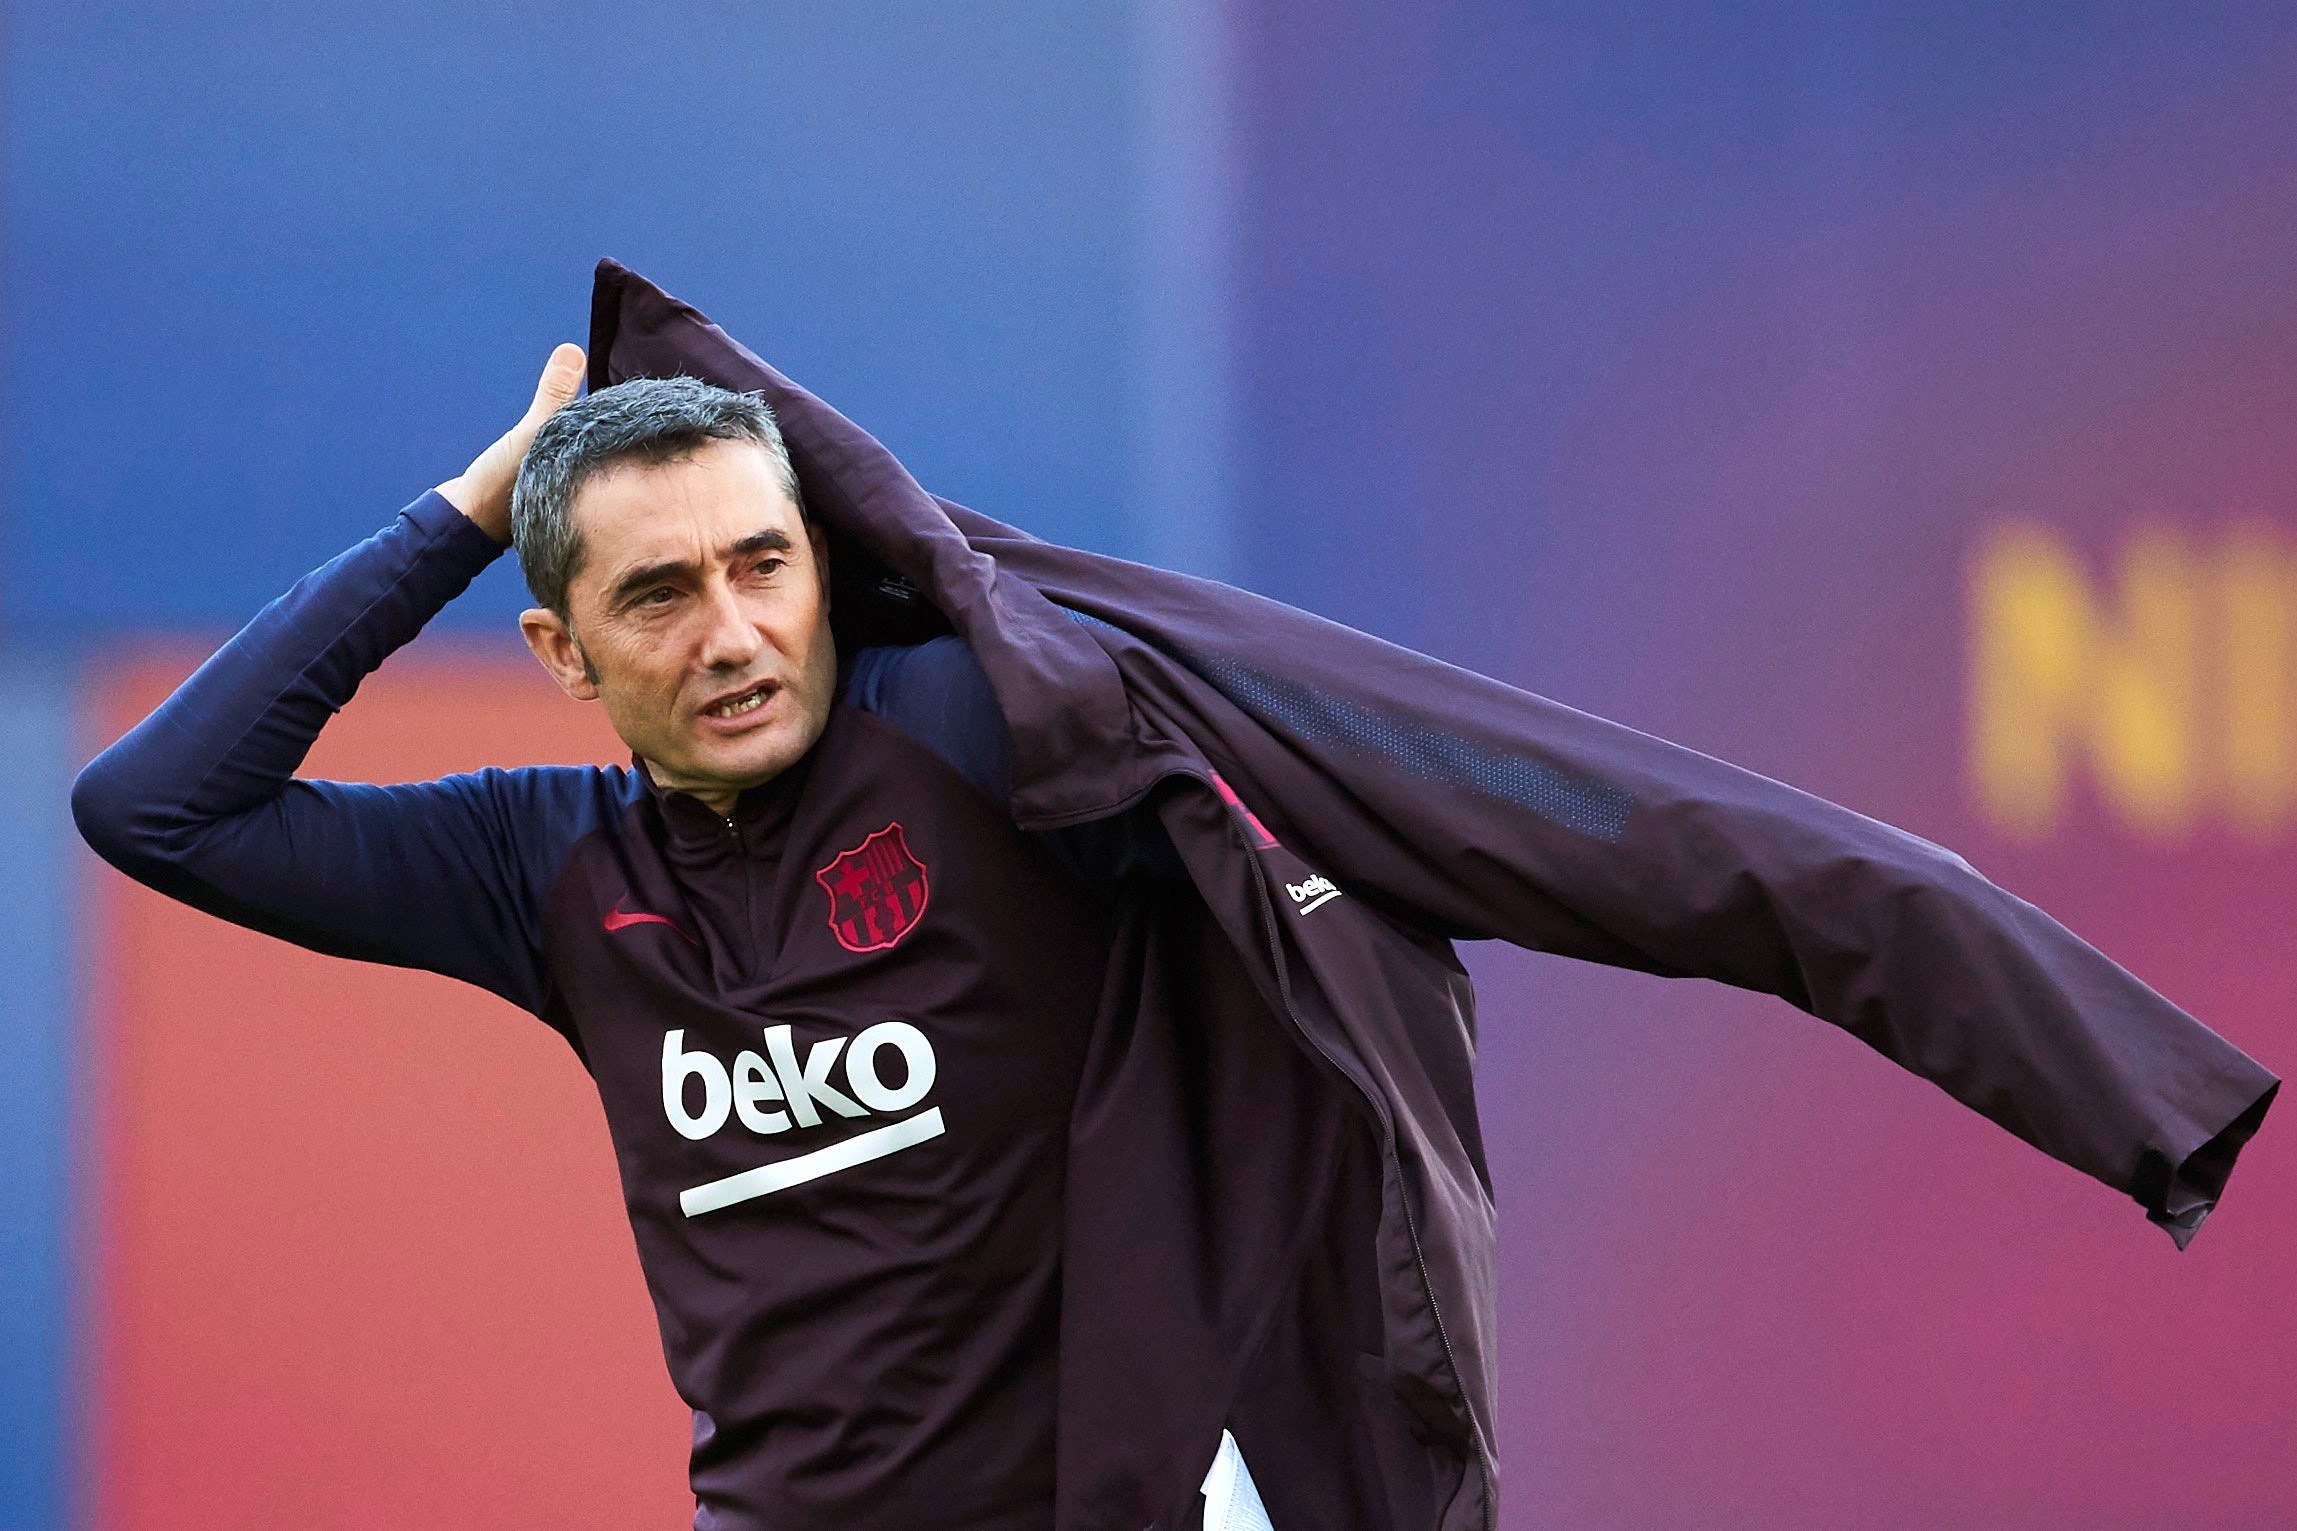 El entrenador del Barcelona, Ernesto Valverde, ha dicho que asume la responsabilidad por la derrota ante el Levante. (Foto Prensa Libre: EFE)